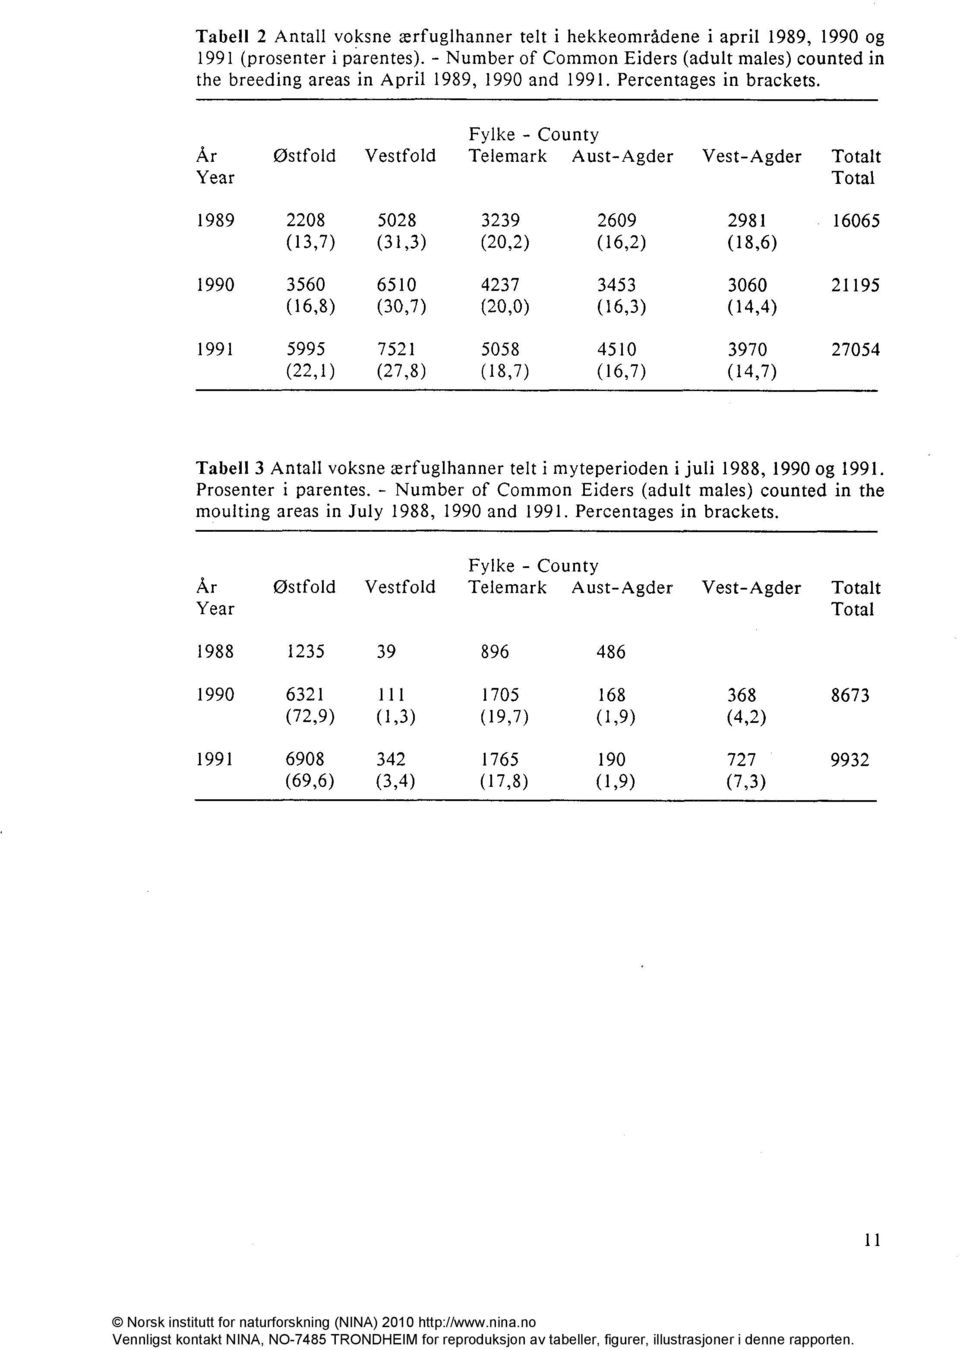 Fylke - County Tabell 3 Antall voksne ærfuglhanner telt i myteperioden i juli 1988, 1990 og 1991. Prosenter i parentes.